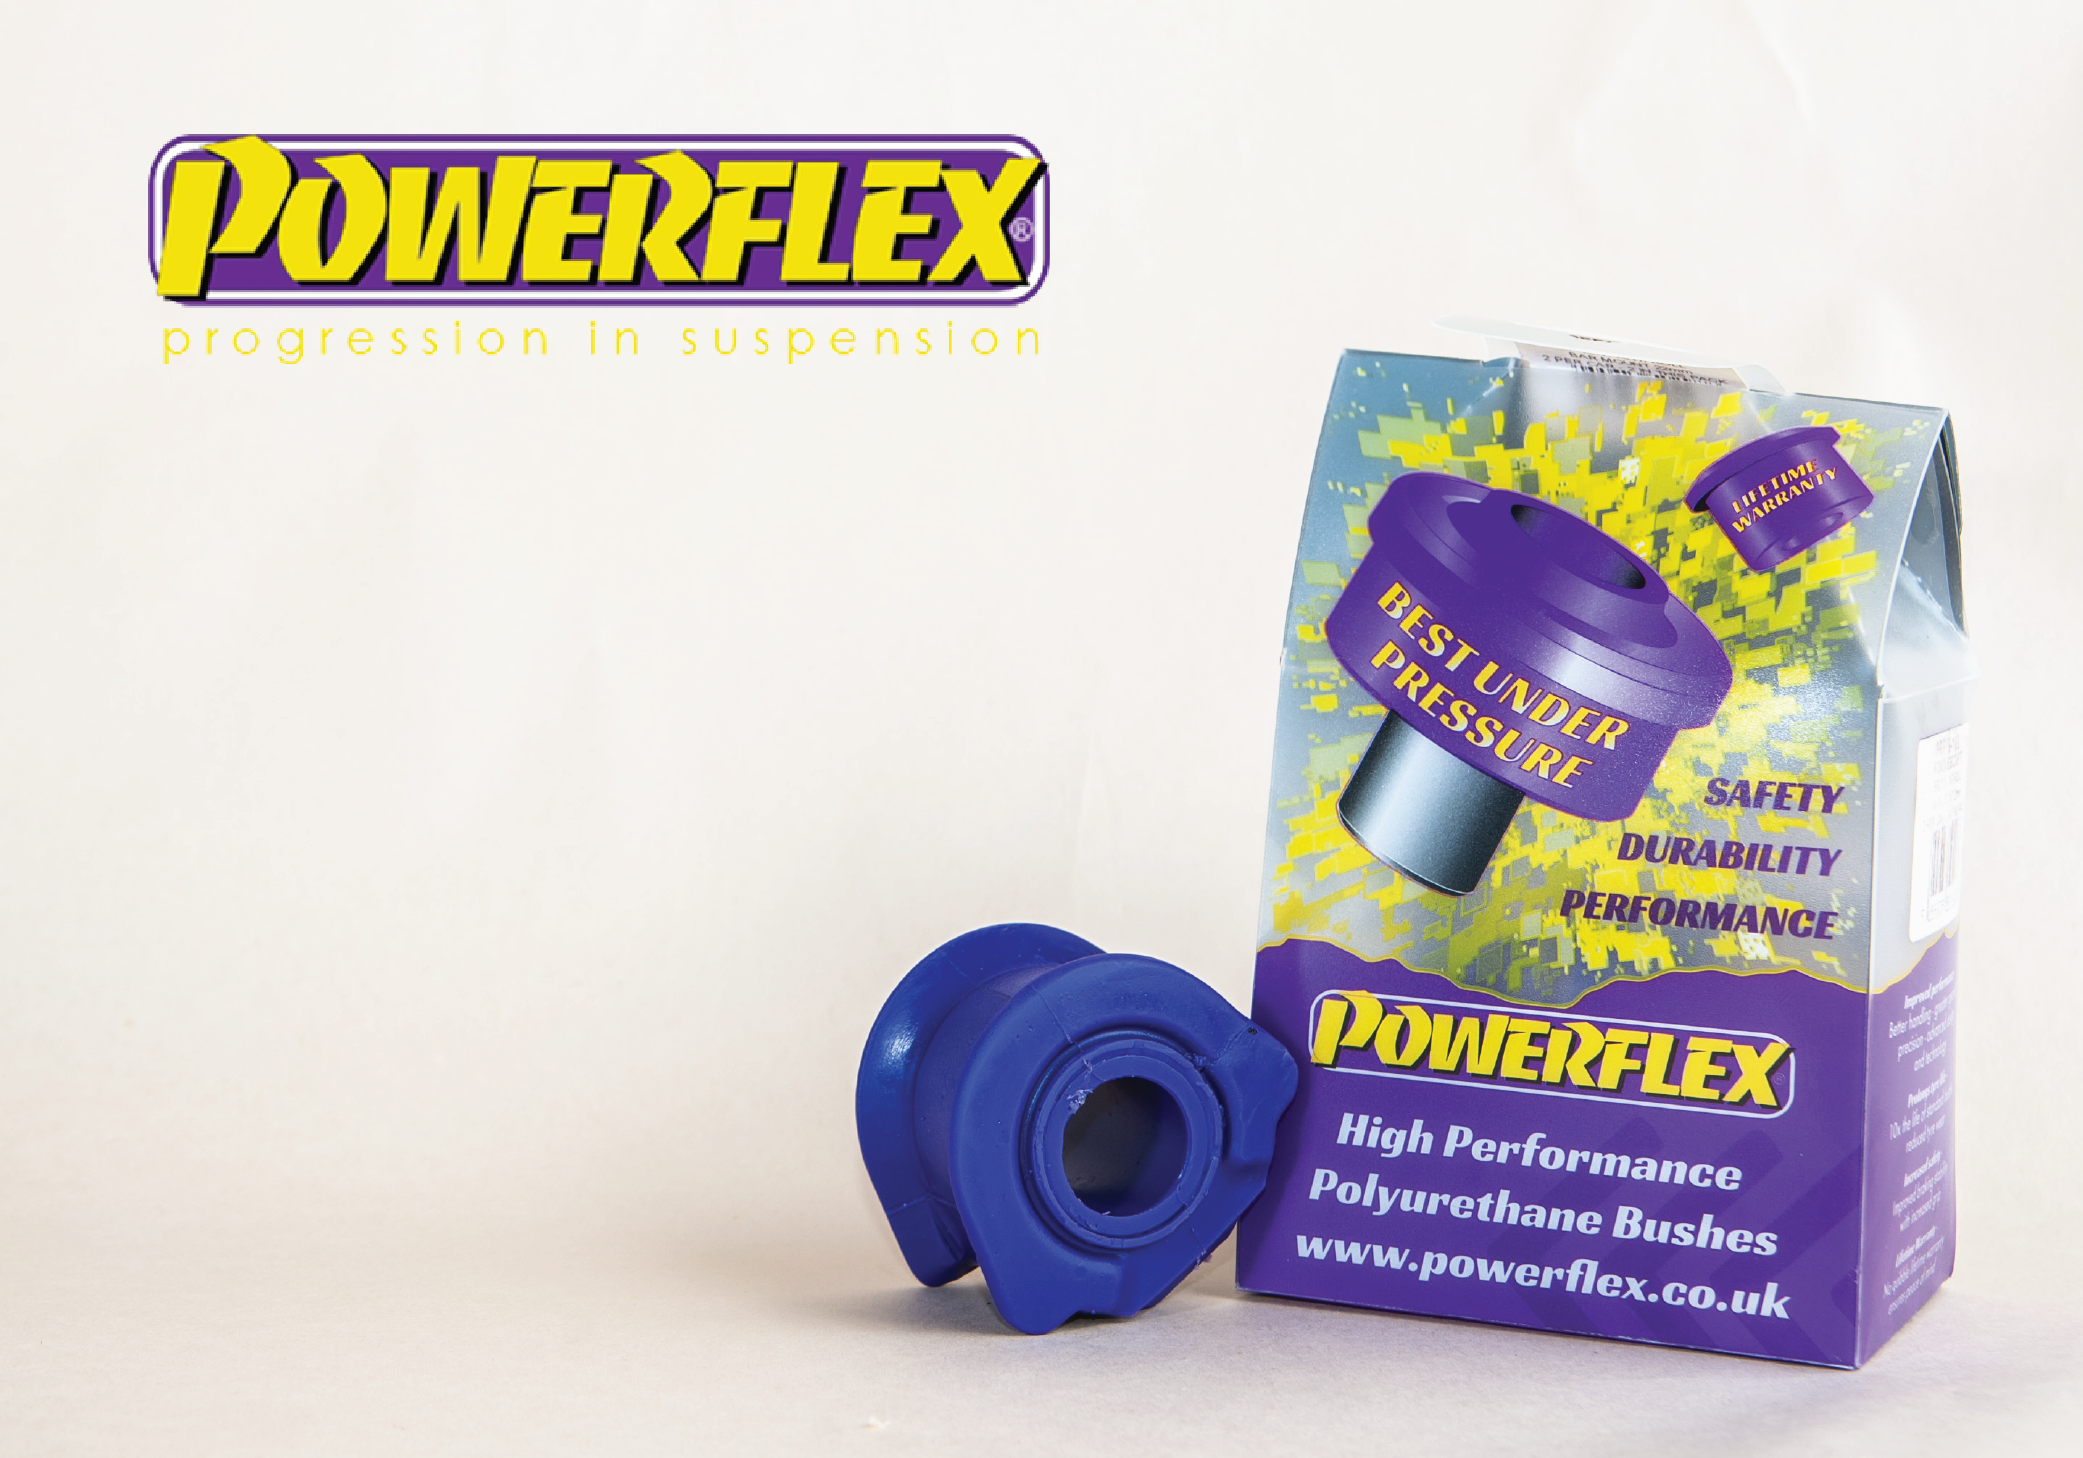 Powerflex Images-03-01.png